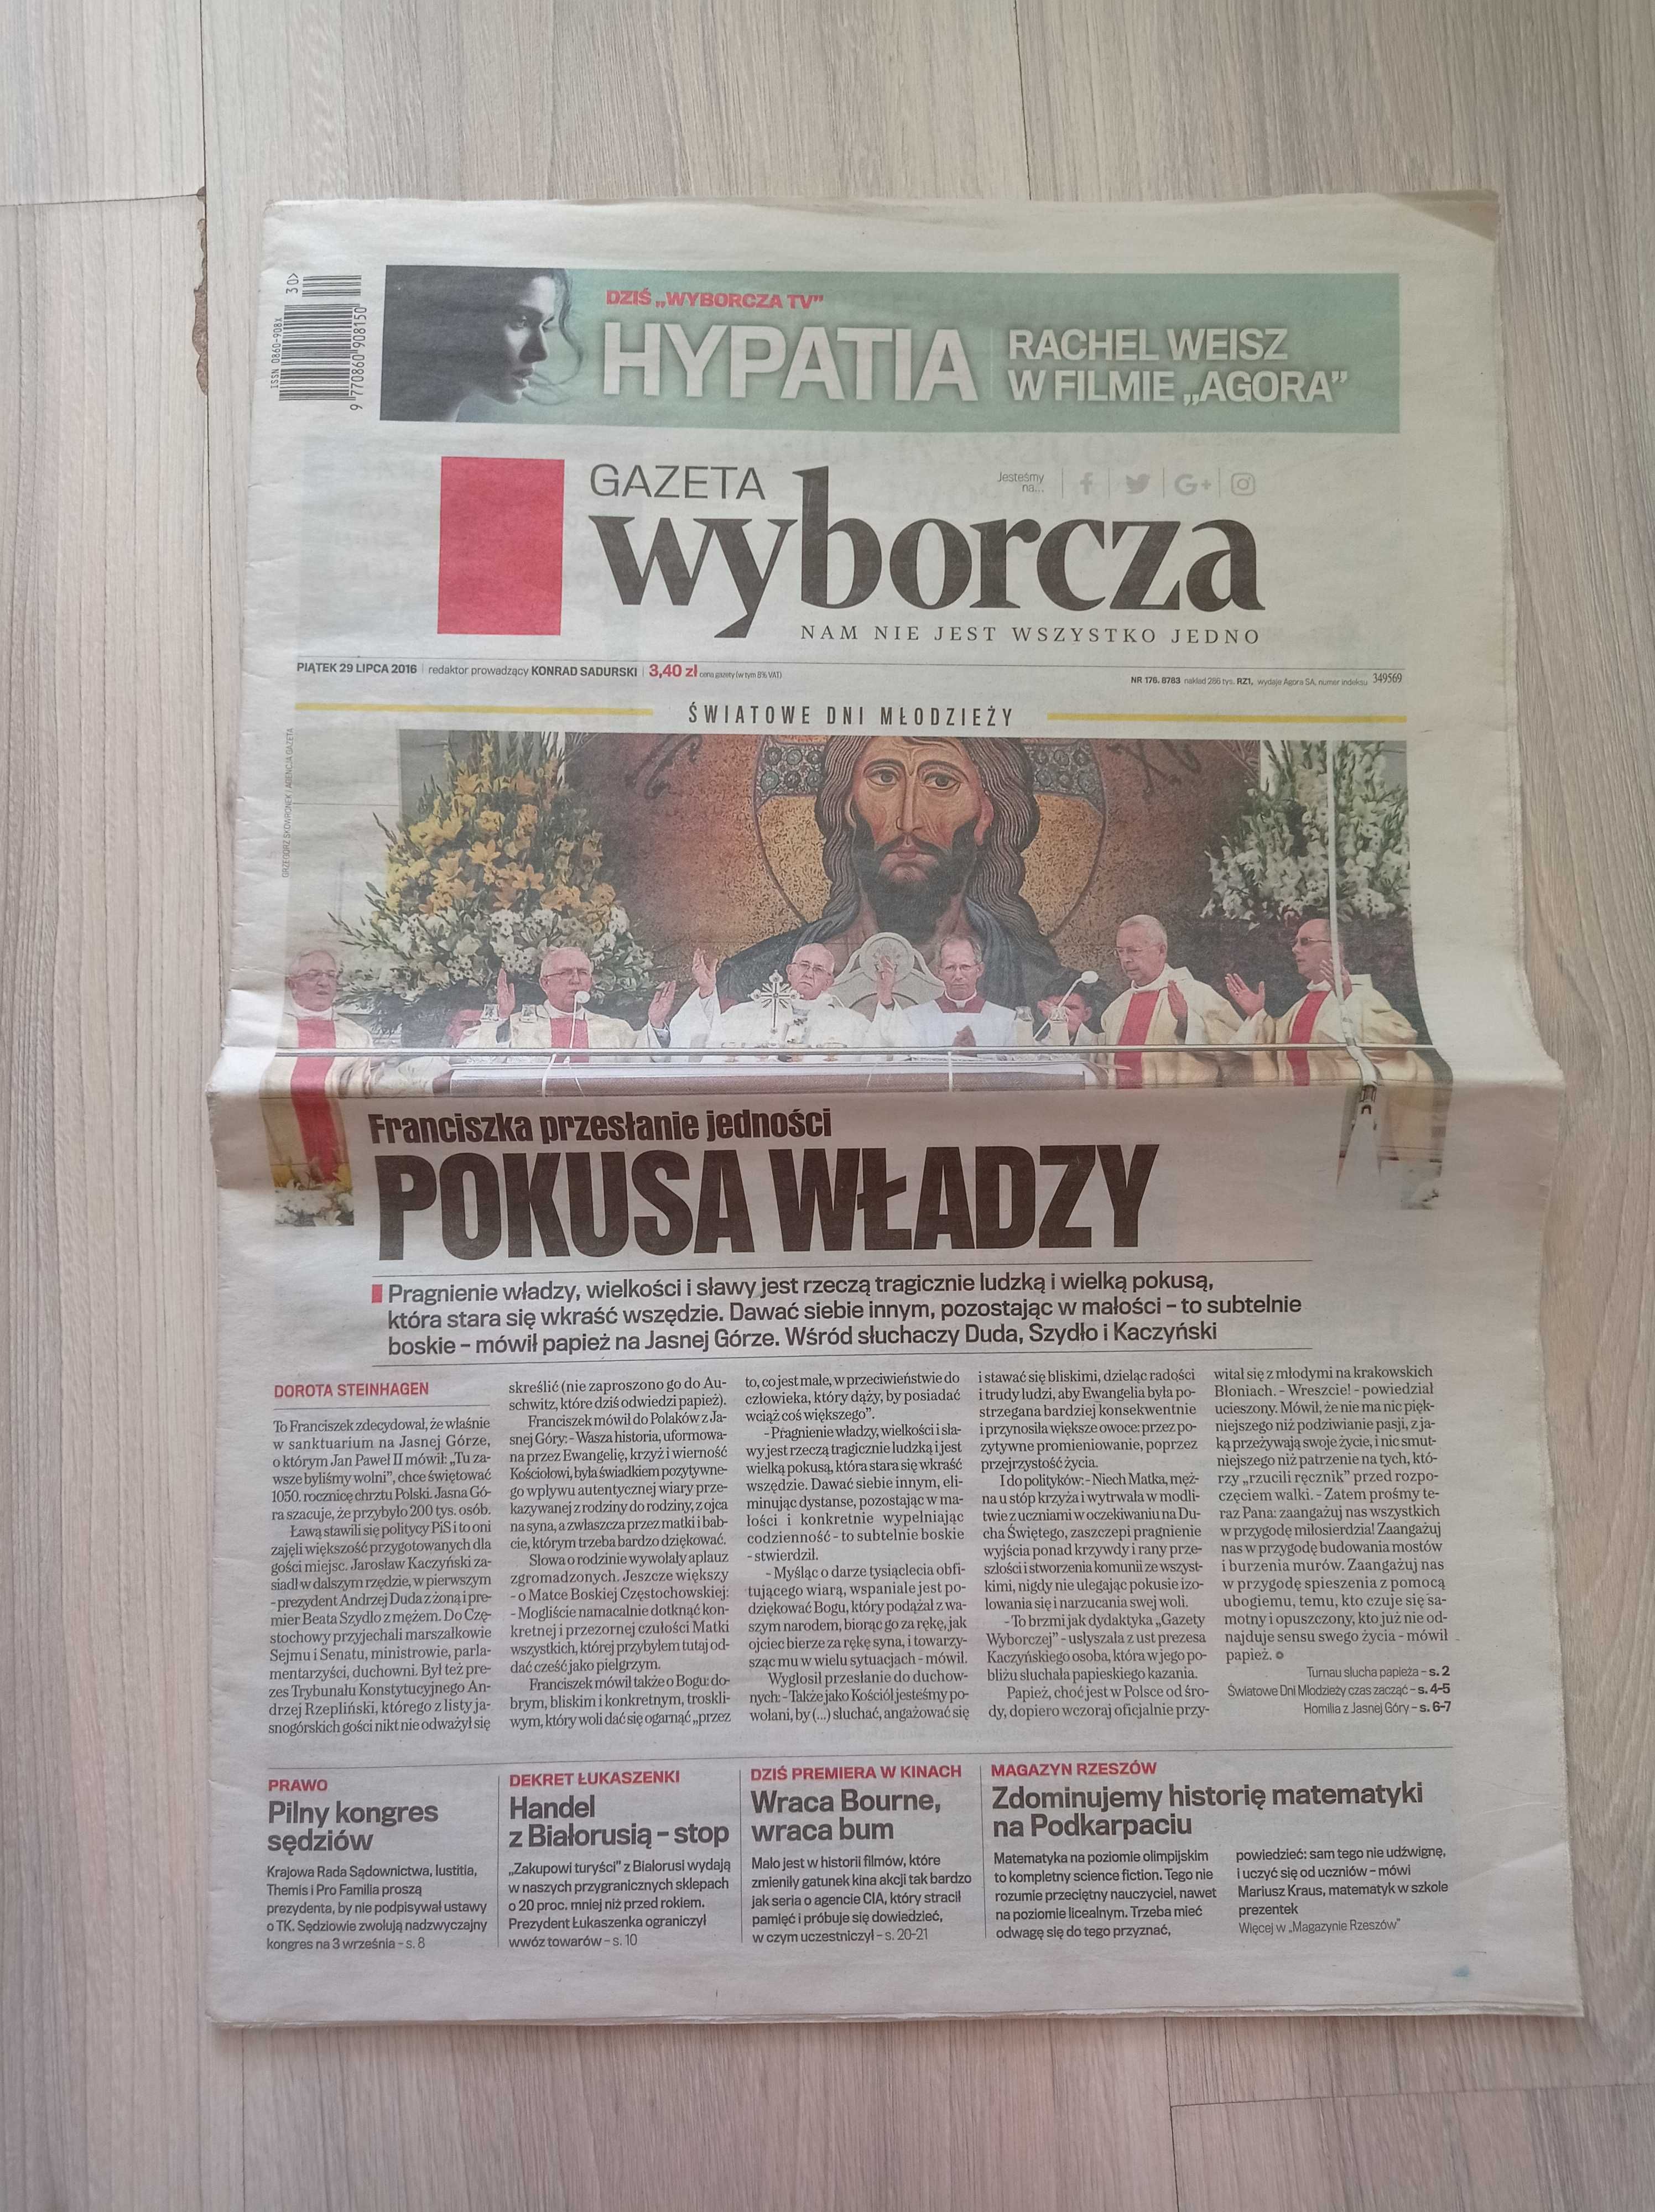 Gazeta Wyborcza, piątek 29 lipca 2016, nr 176